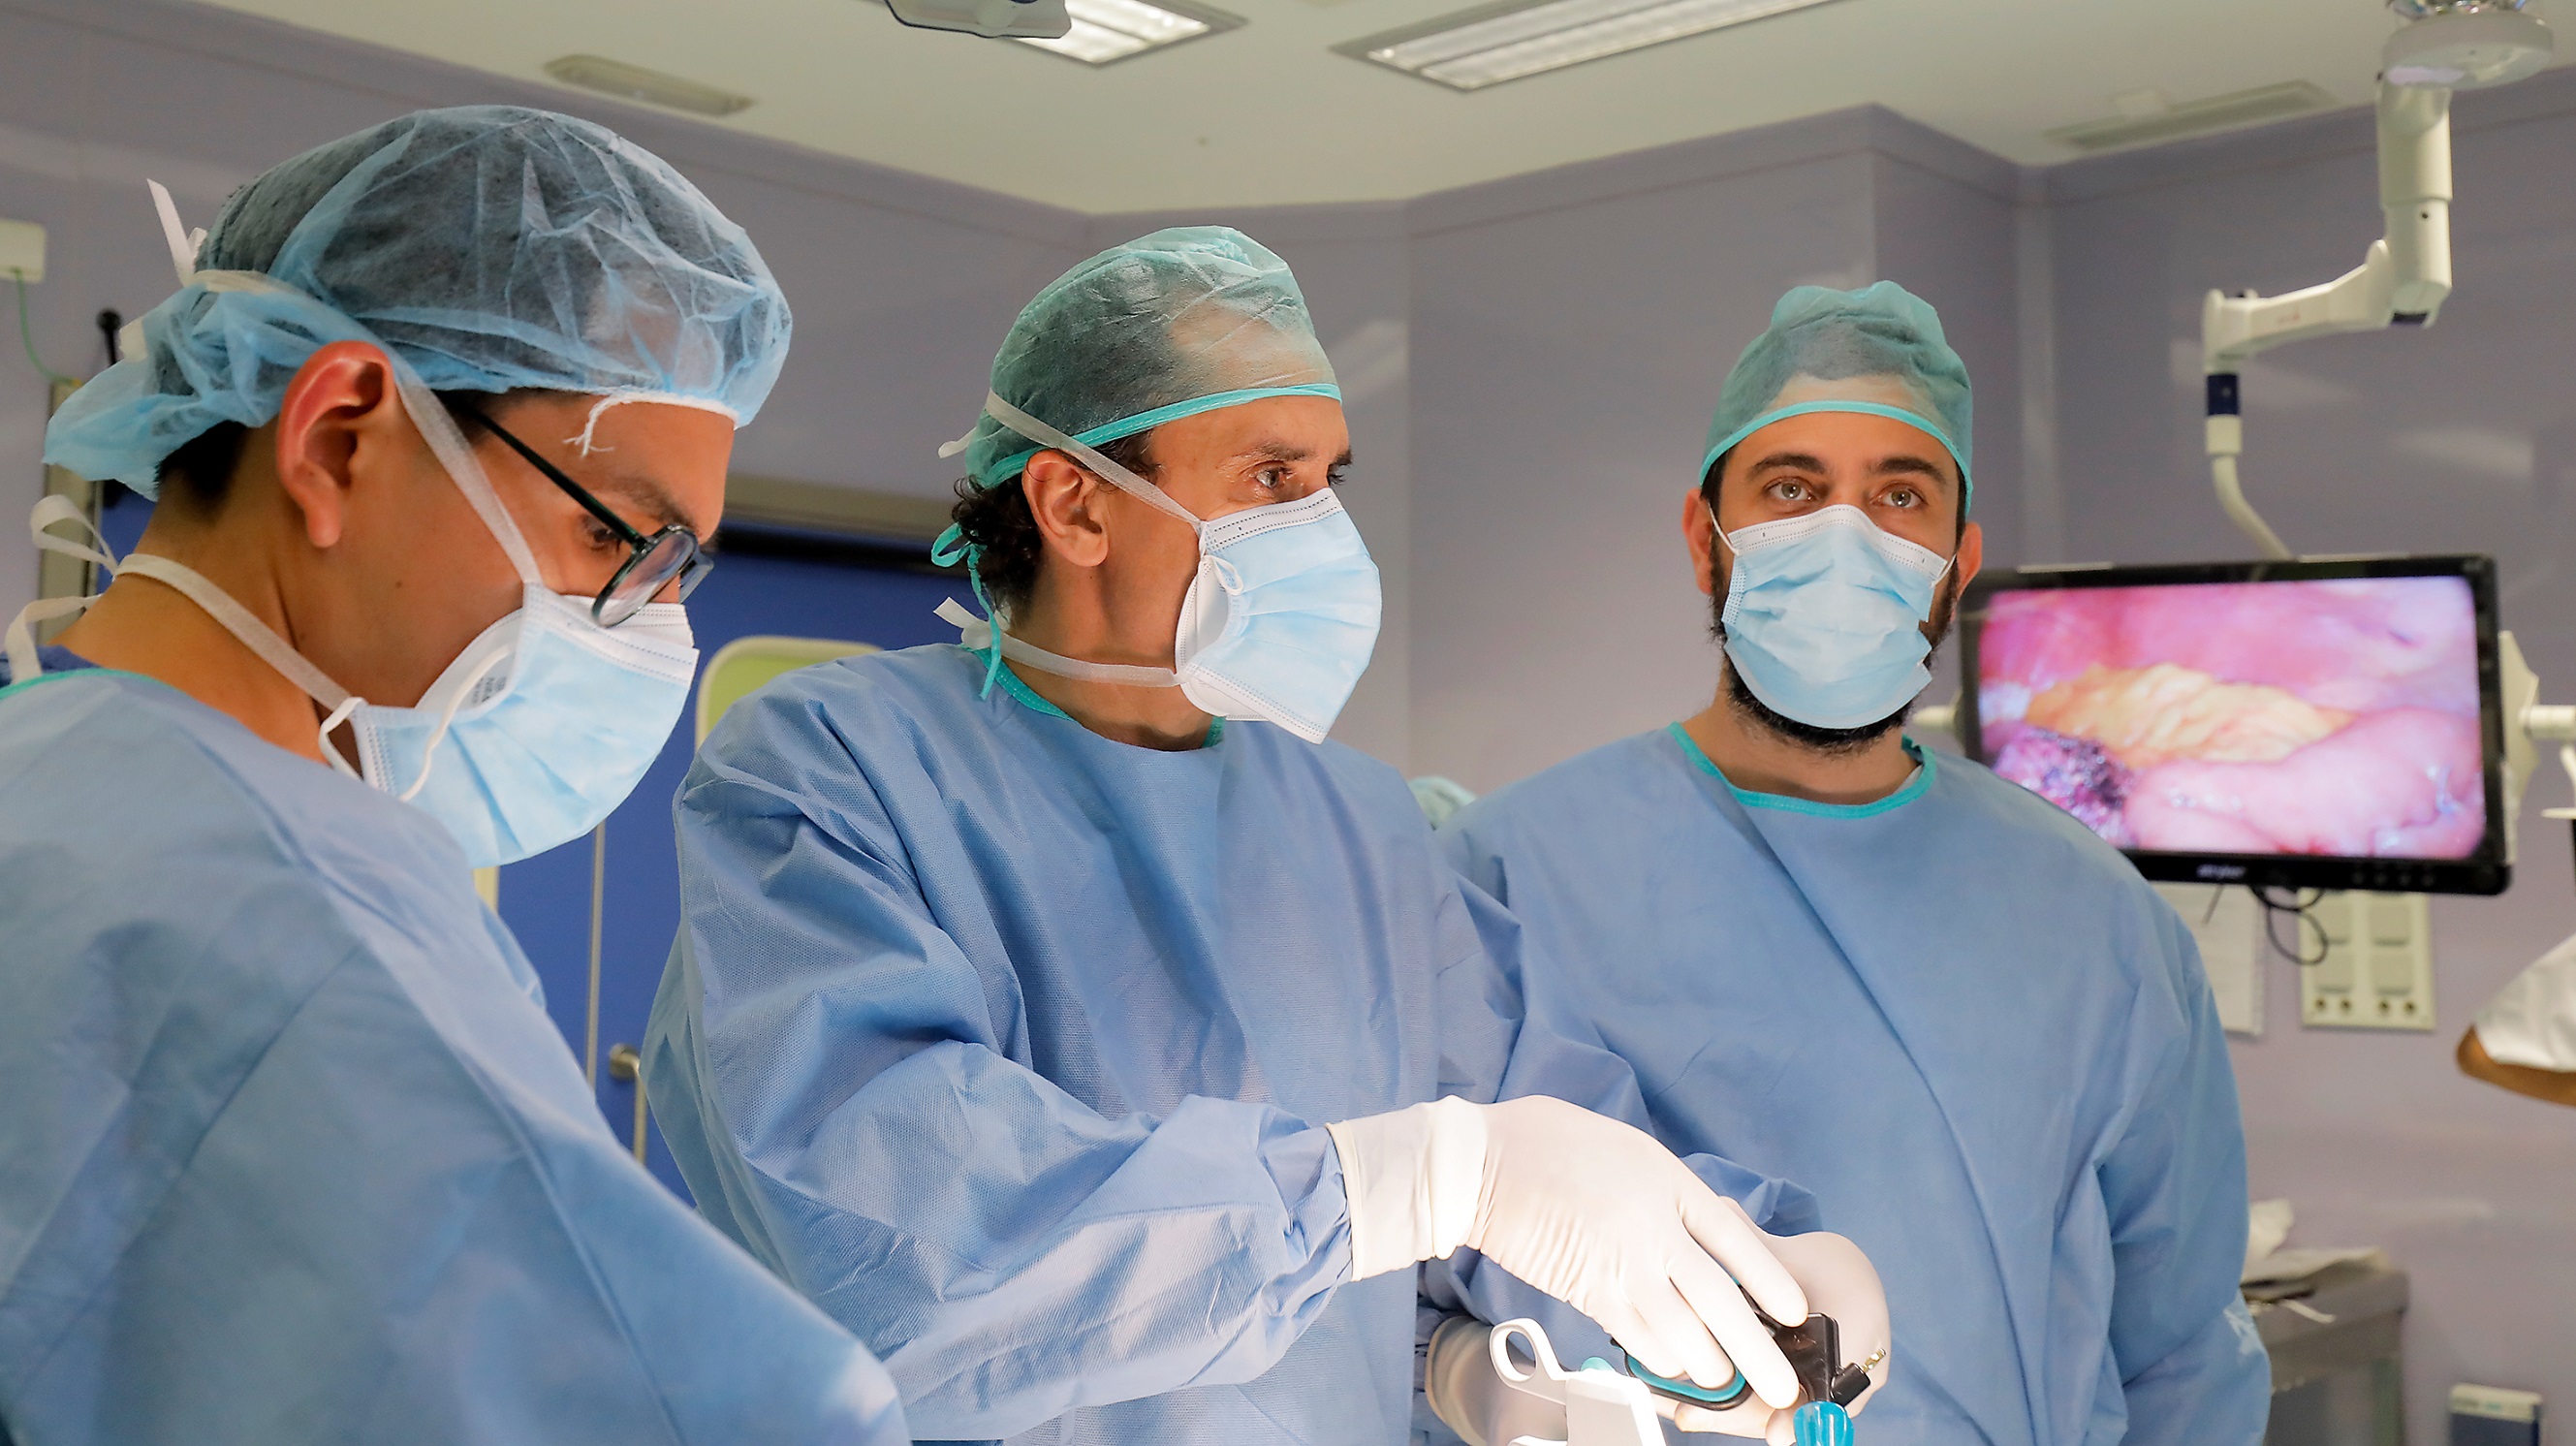 El doctor Morales y su equipo de cirugía durante una intervención